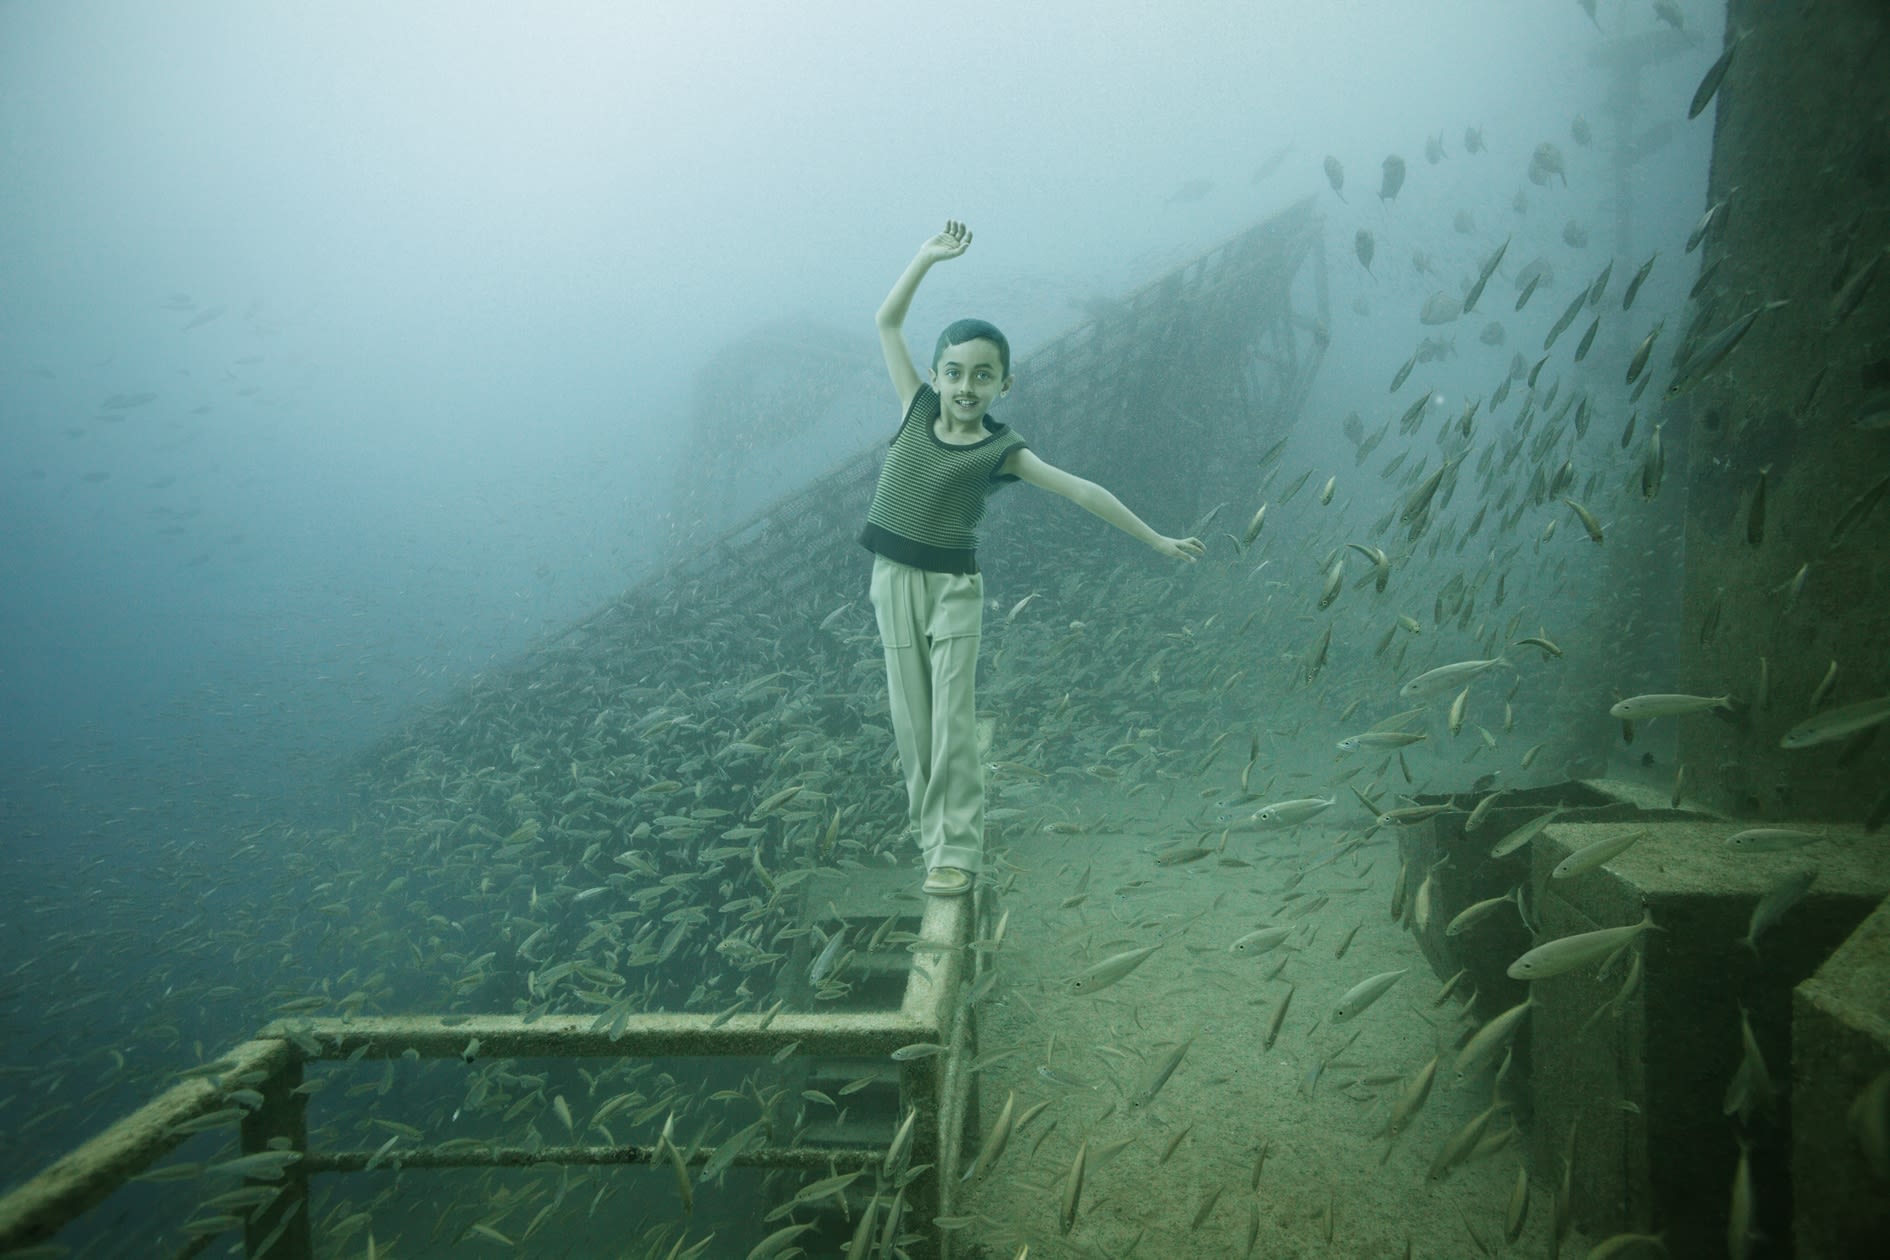 titanic pictures underwater bodies